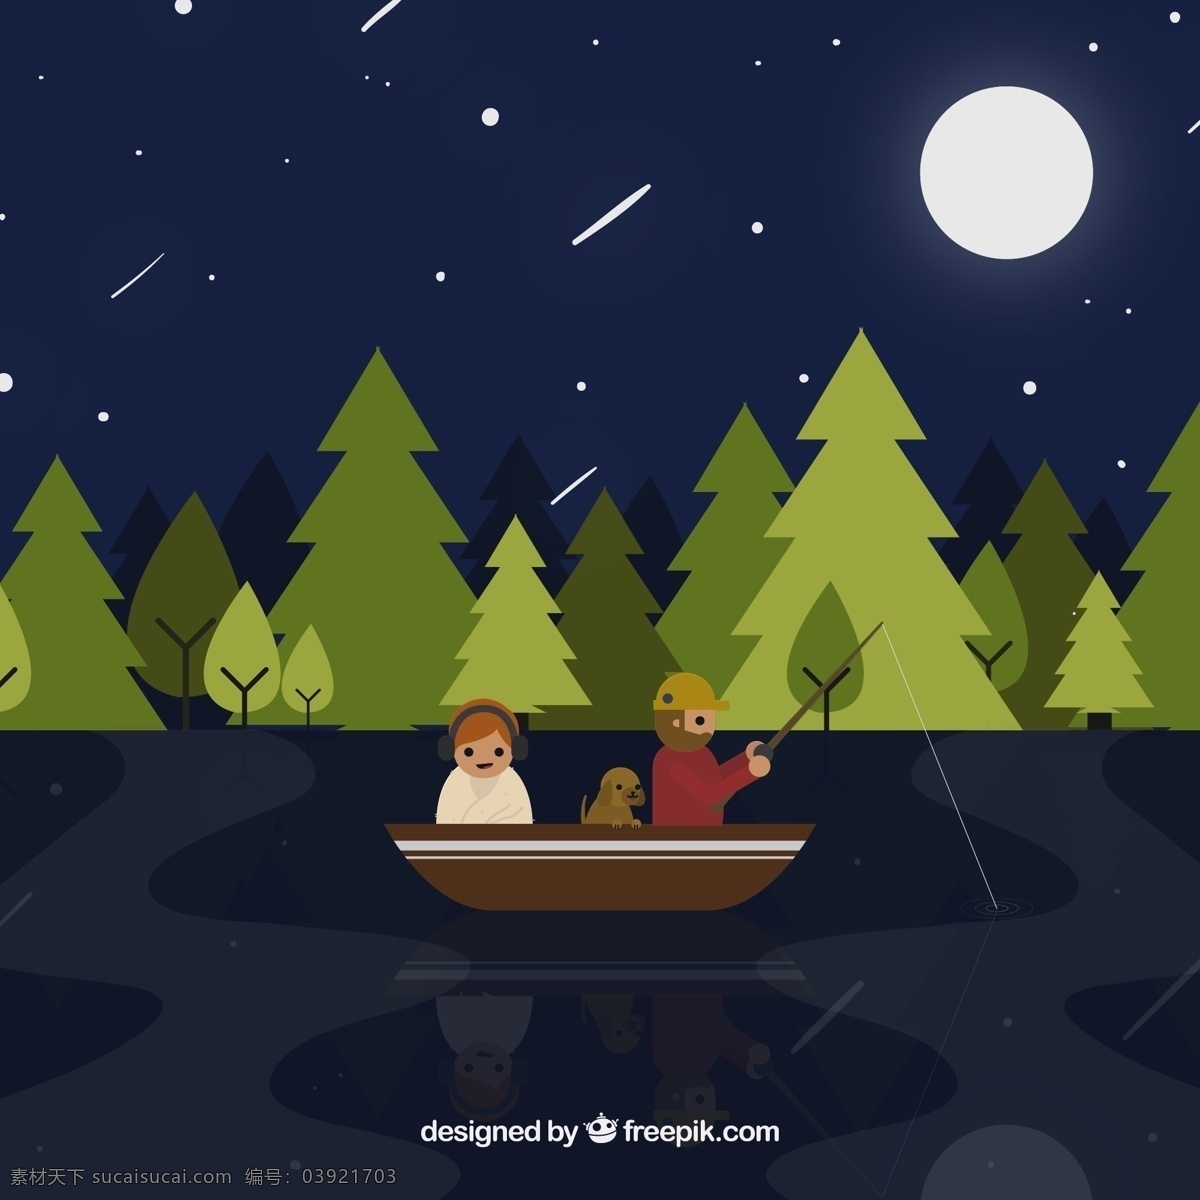 创意 夜间 钓鱼 人物 矢量 夜晚 树林 树木 森林 湖水 河流 月亮 星星 流星 船 狗 动漫动画 风景漫画